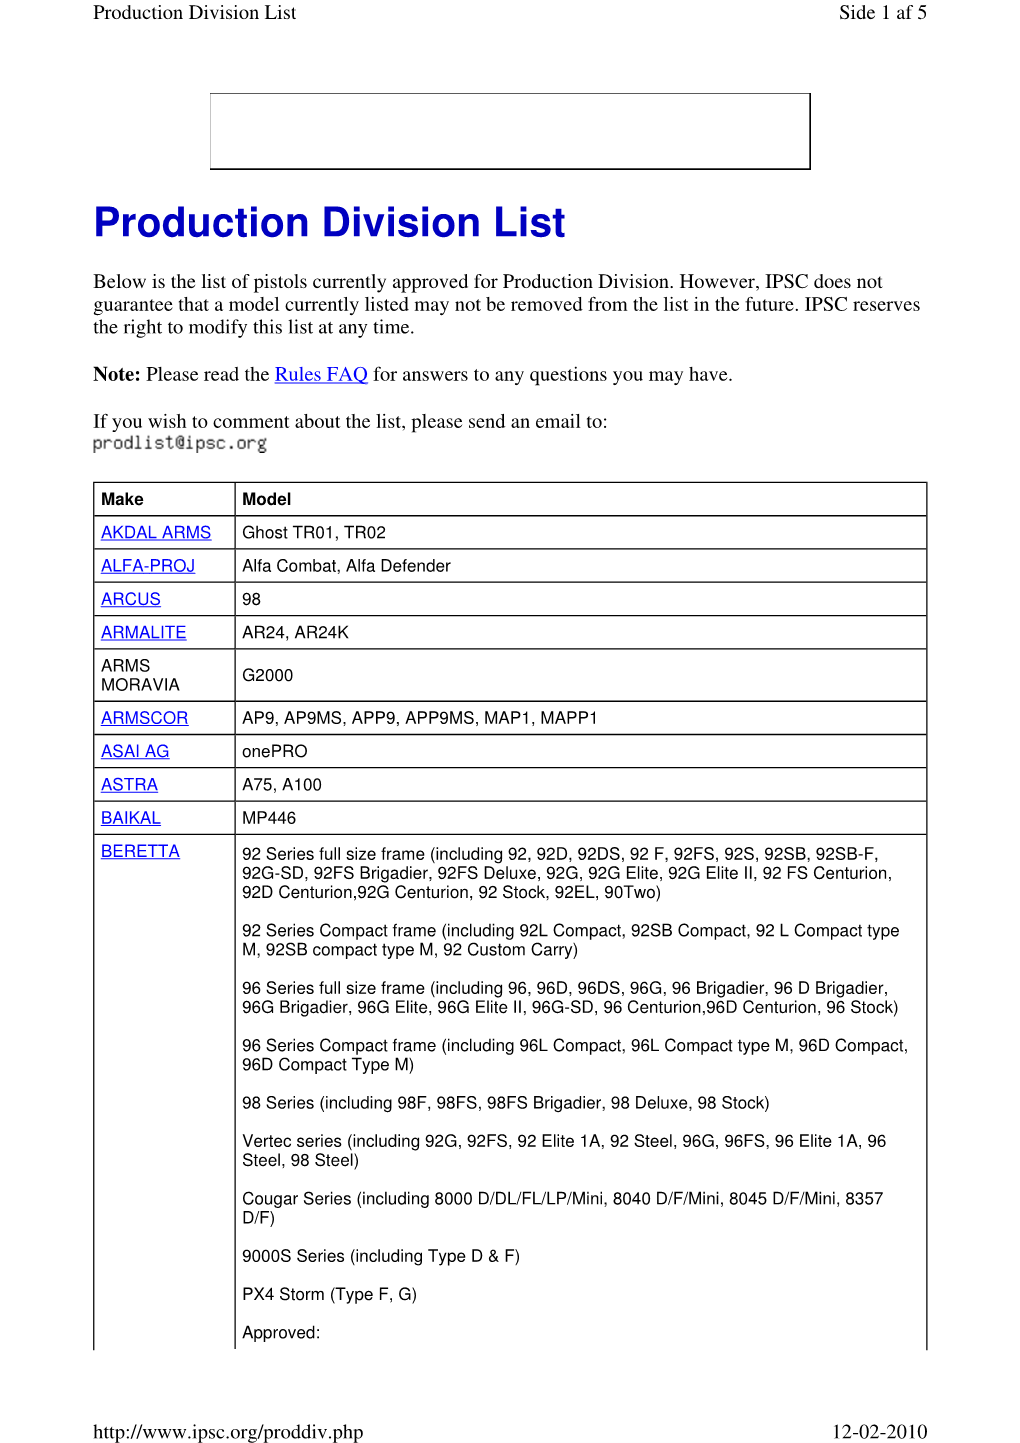 Production Division List Side 1 Af 5